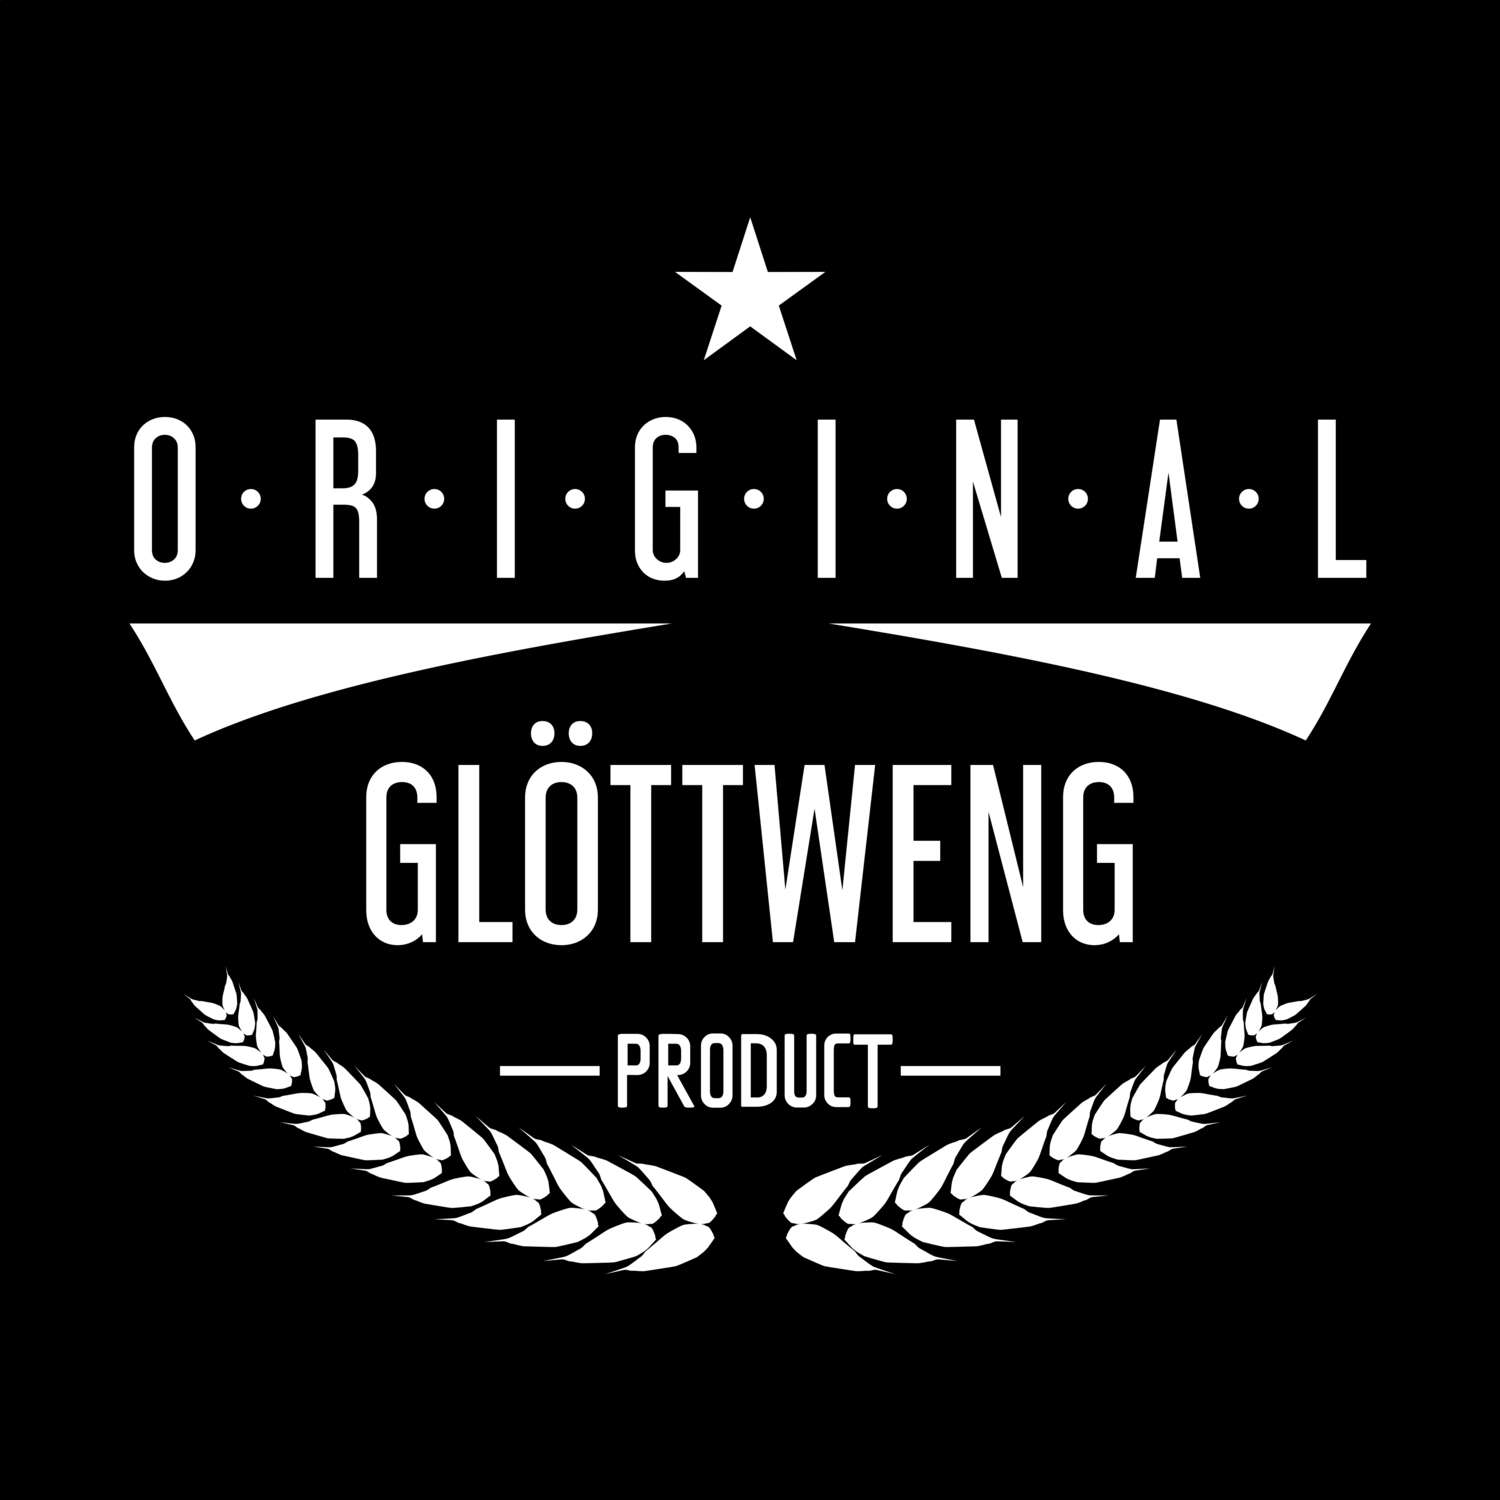 Glöttweng T-Shirt »Original Product«